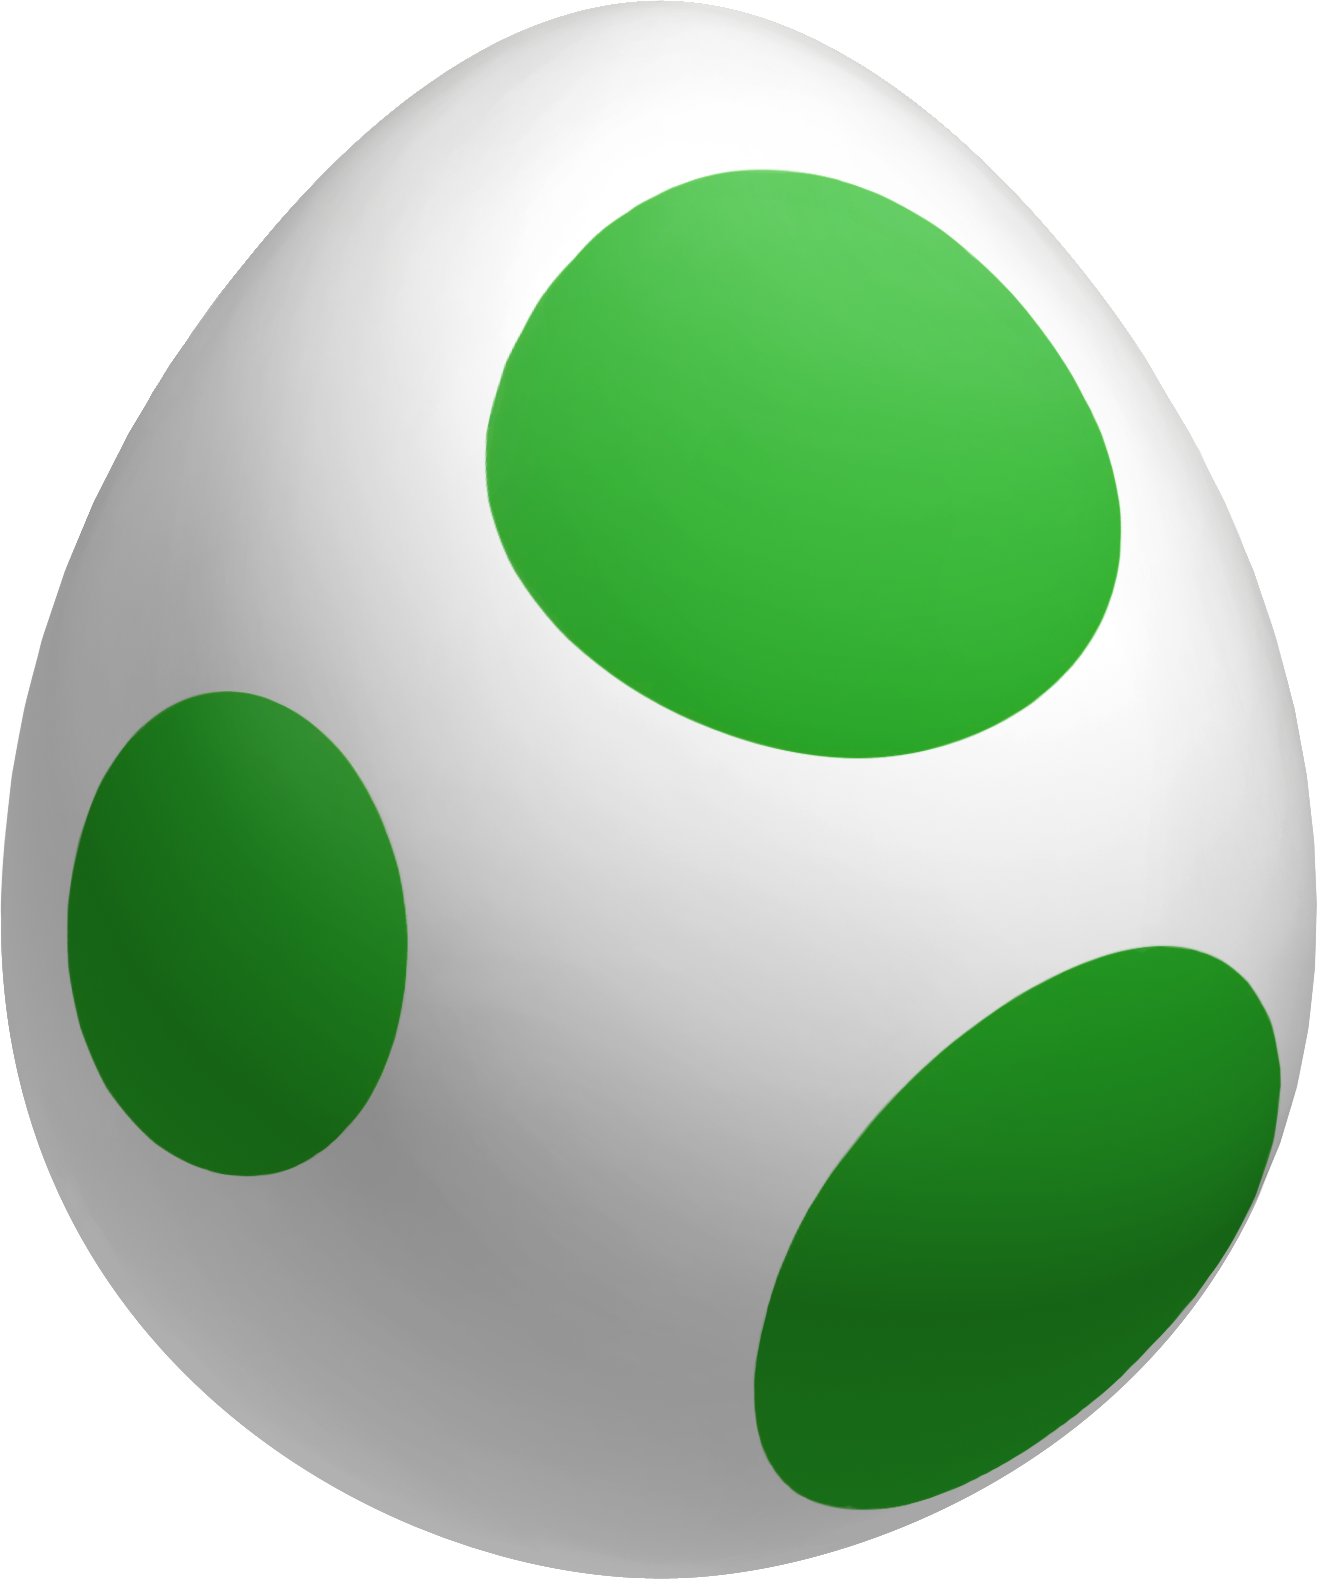 有绿色斑点的蛋